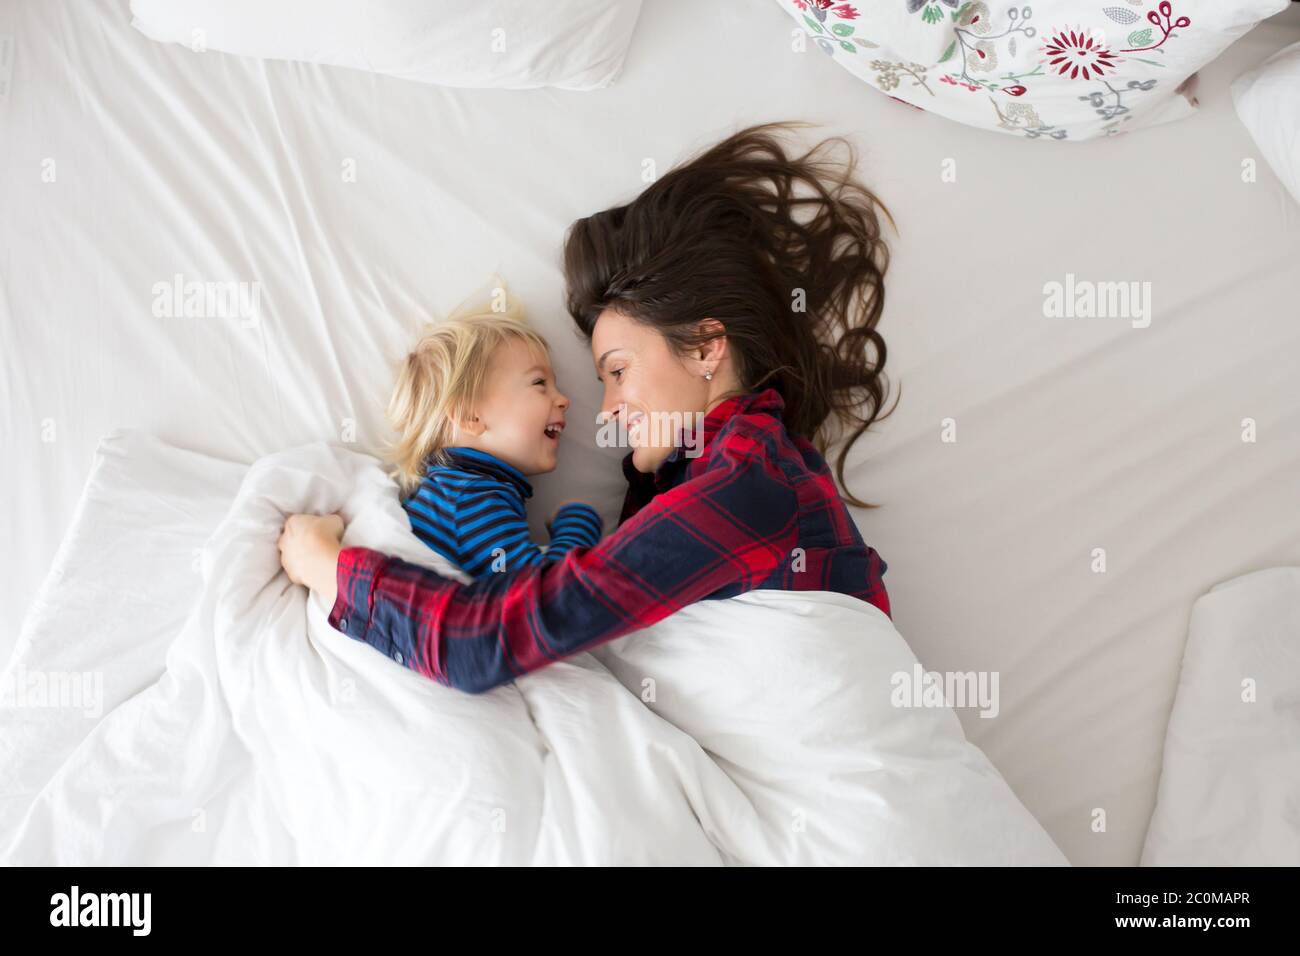 С ее мамой в постели. Мама с мальчиком в кровати. Маленький мальчик в постели с мамой. В 14 В кровати с мамой. Юный мальчик в кровати с мамой.